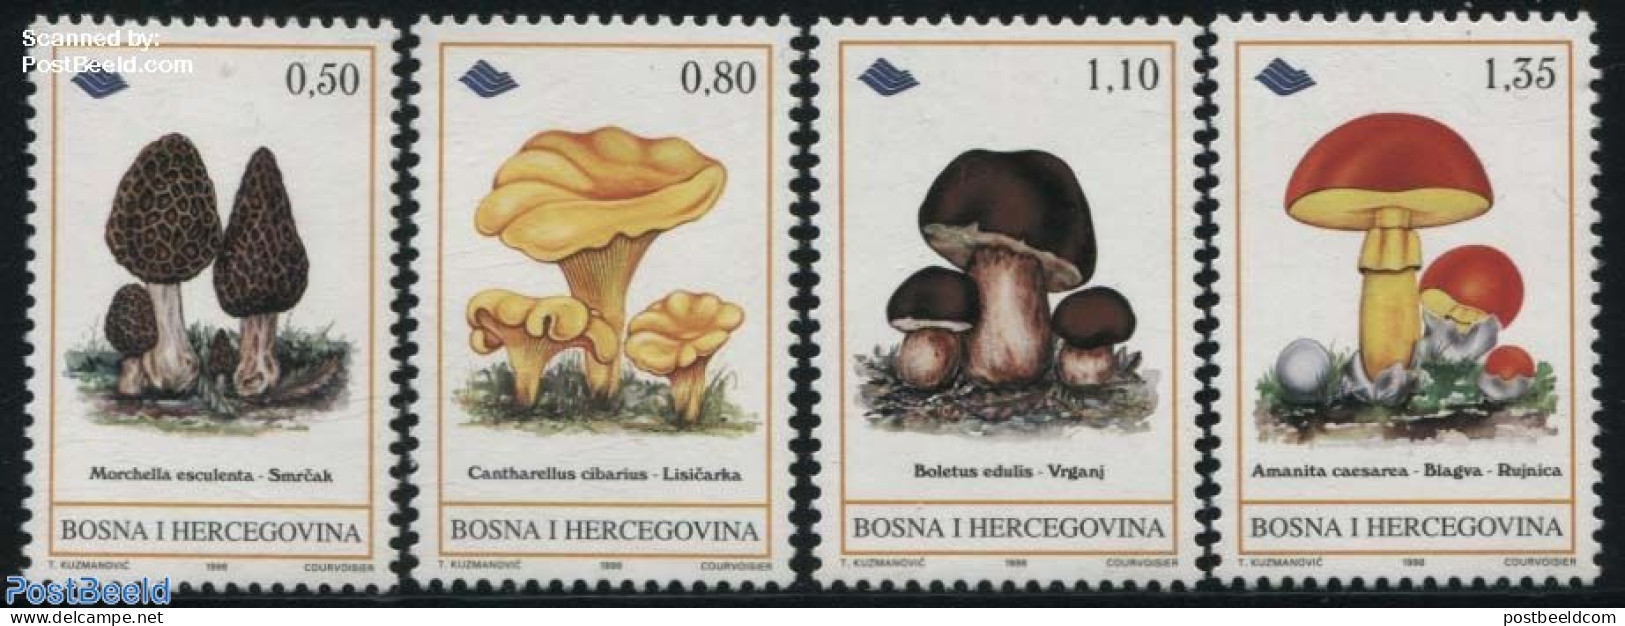 Bosnia Herzegovina 1998 Eatable Mushrooms 4v, Mint NH, Nature - Mushrooms - Champignons